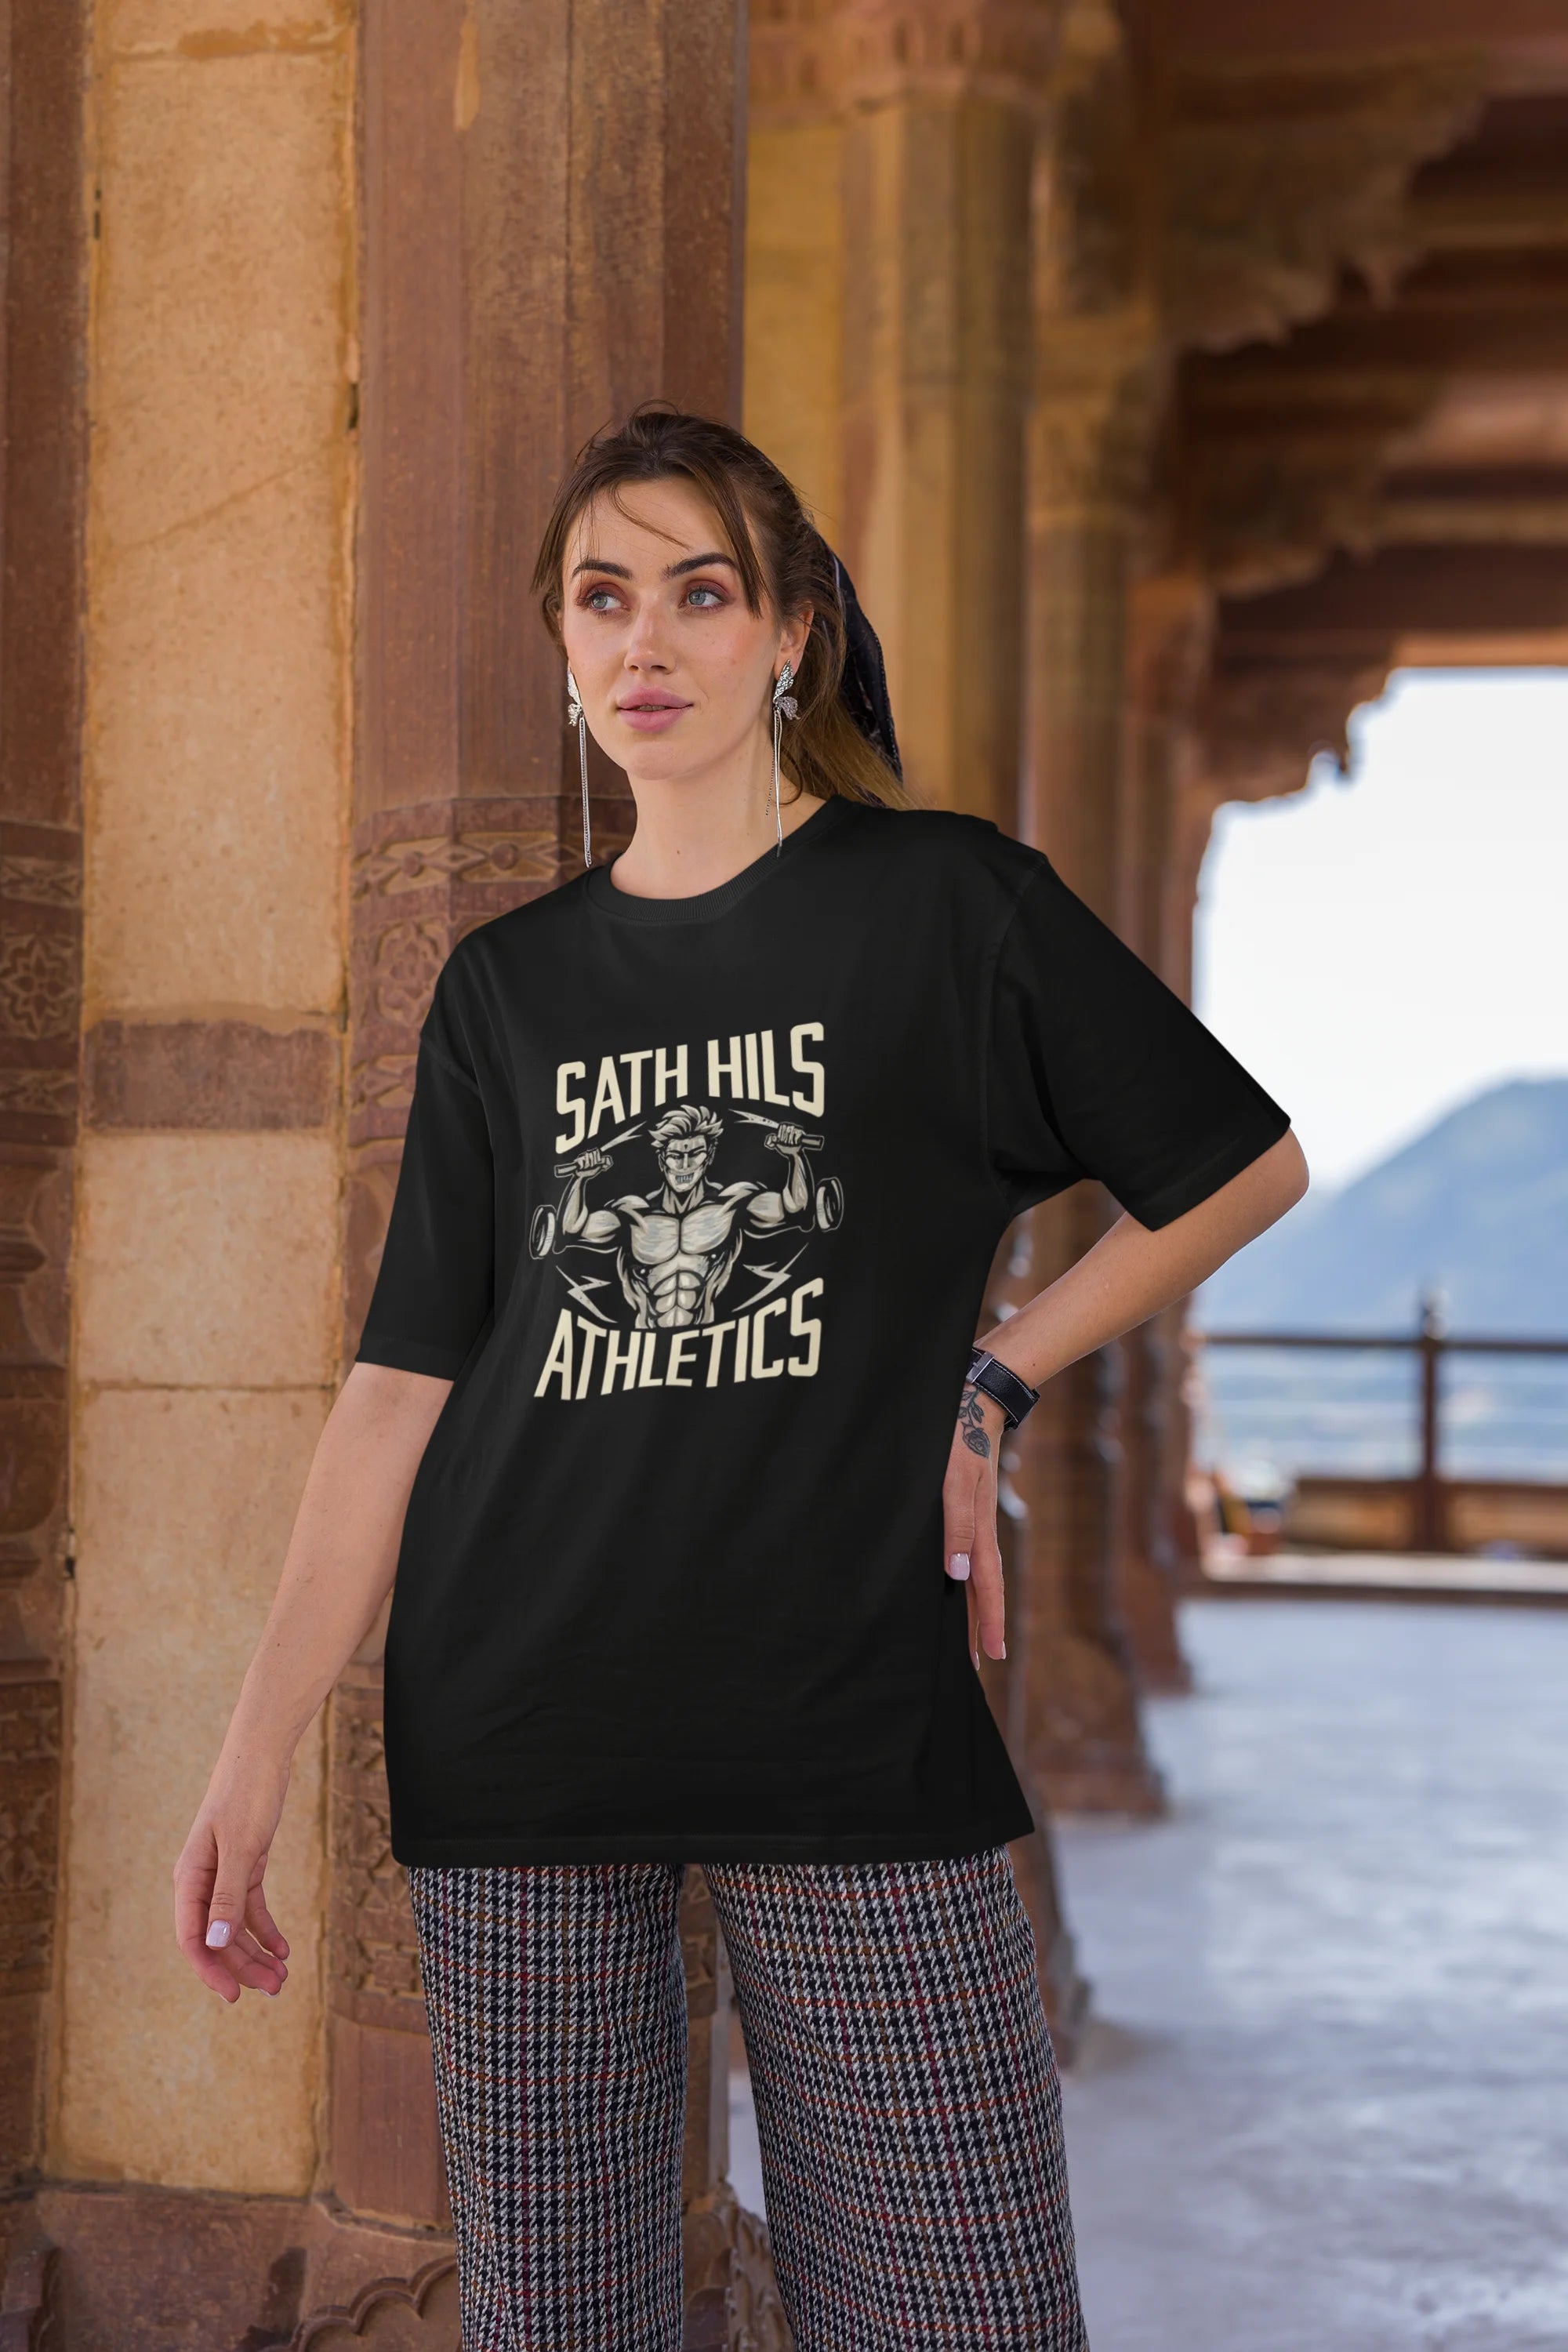 Sath Hils Athletics  | Retro Theme | Premium Oversized Half Sleeve Unisex T-Shirt